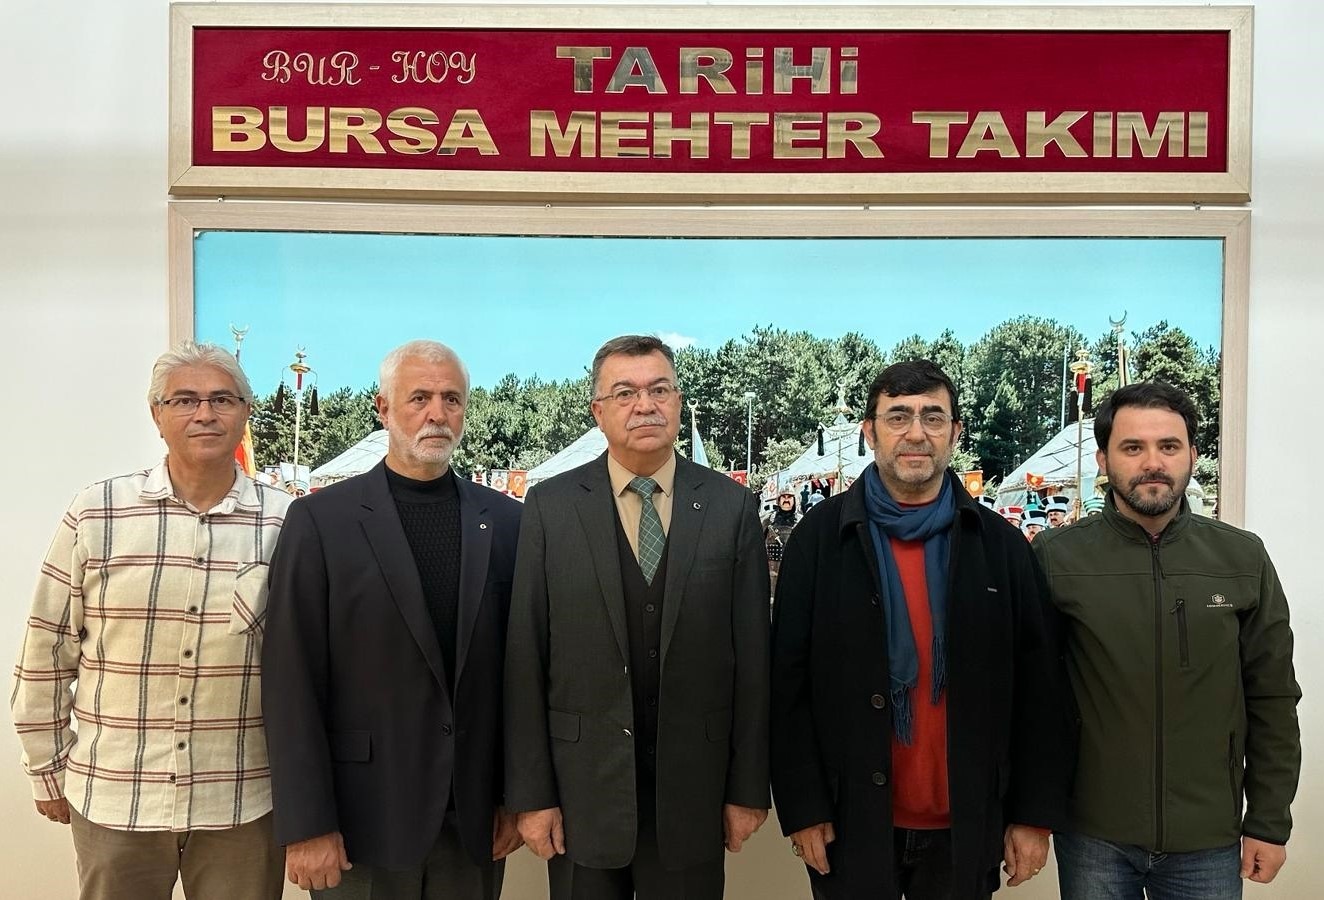 Bursa Mehter Takımı genel kurulunda Mesut Özkeser güven tazeledi